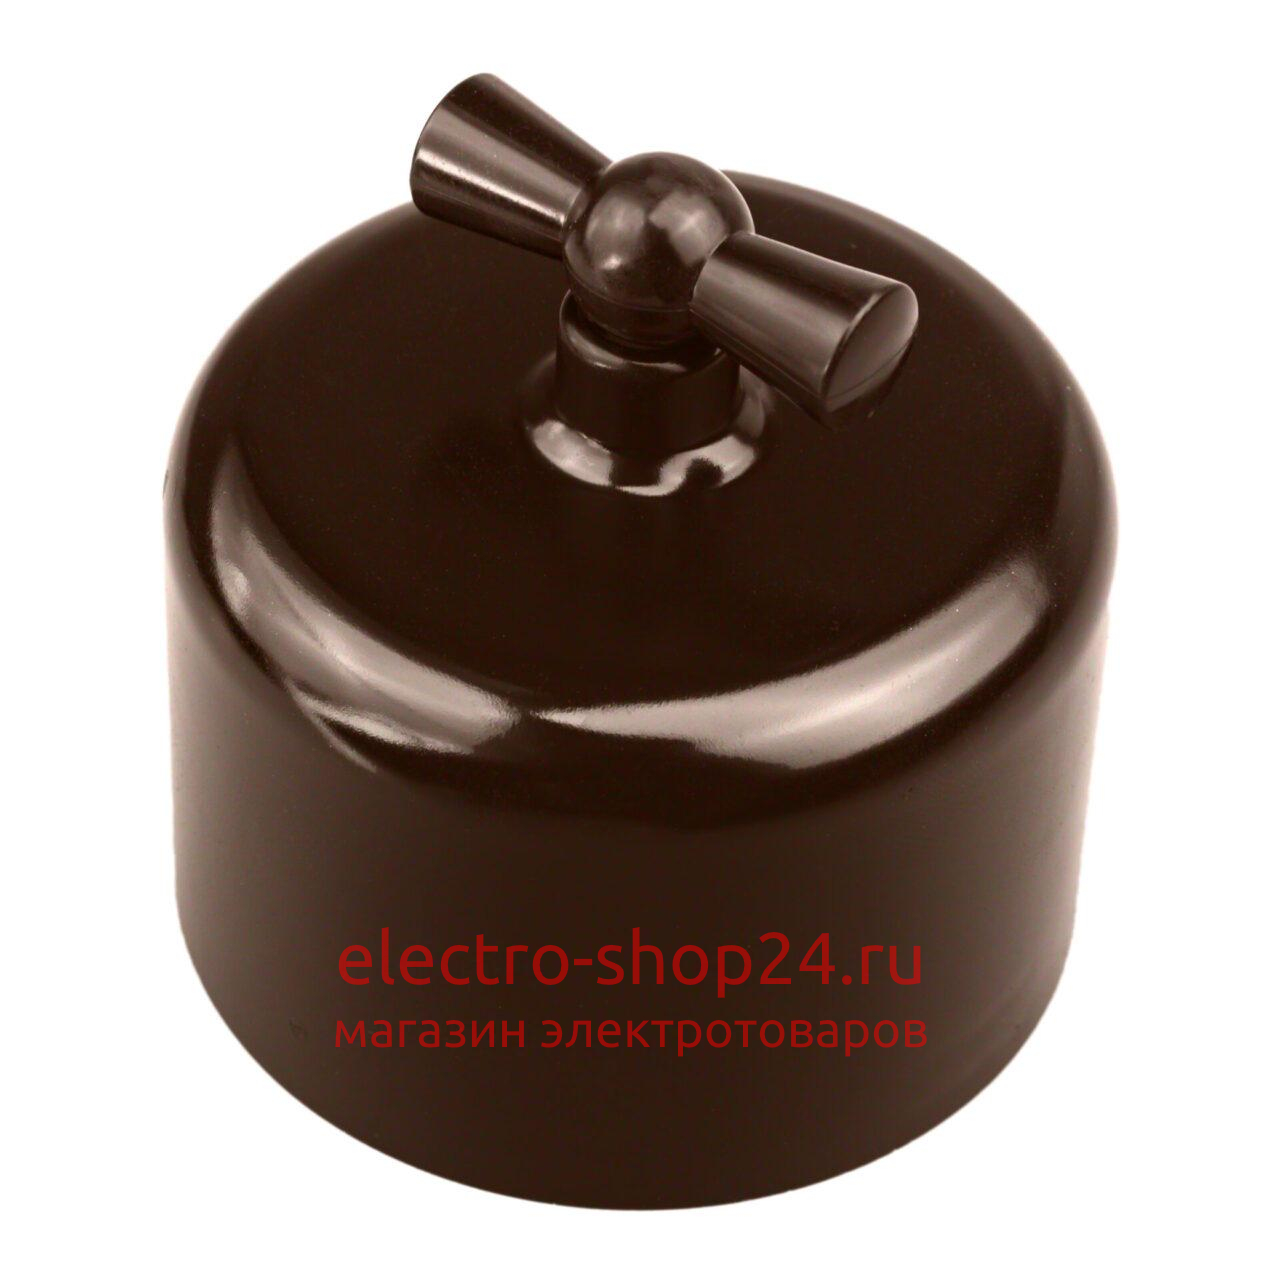 Выключатель 2-клавишный Bironi Ришелье пластик коричневый R1-212-22 R1-212-22 - магазин электротехники Electroshop